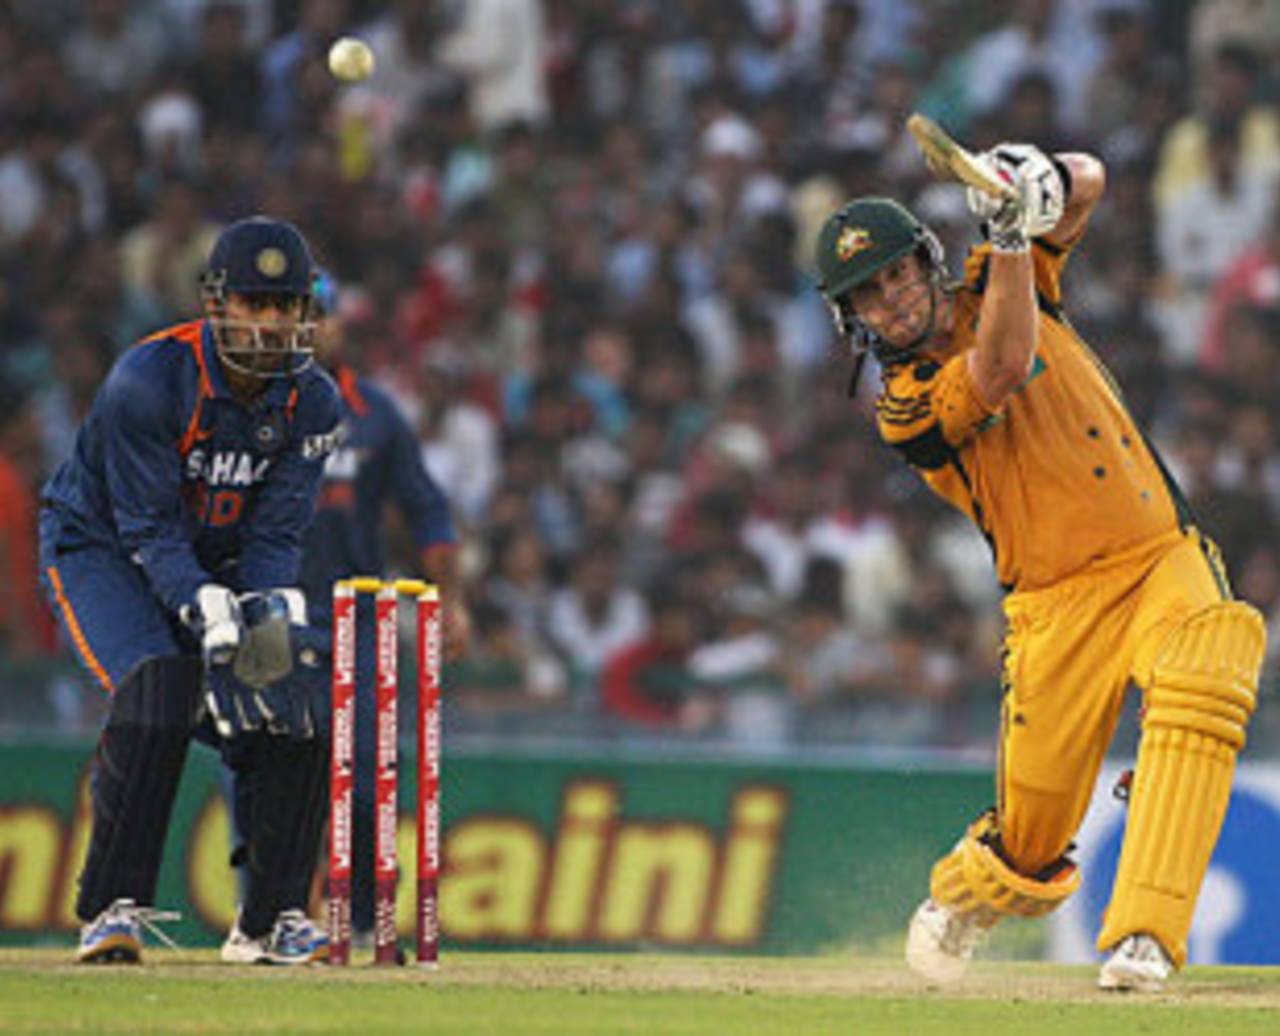 Cameron White gets adventurous, India v Australia, 4th ODI, Mohali, November 2, 2009 